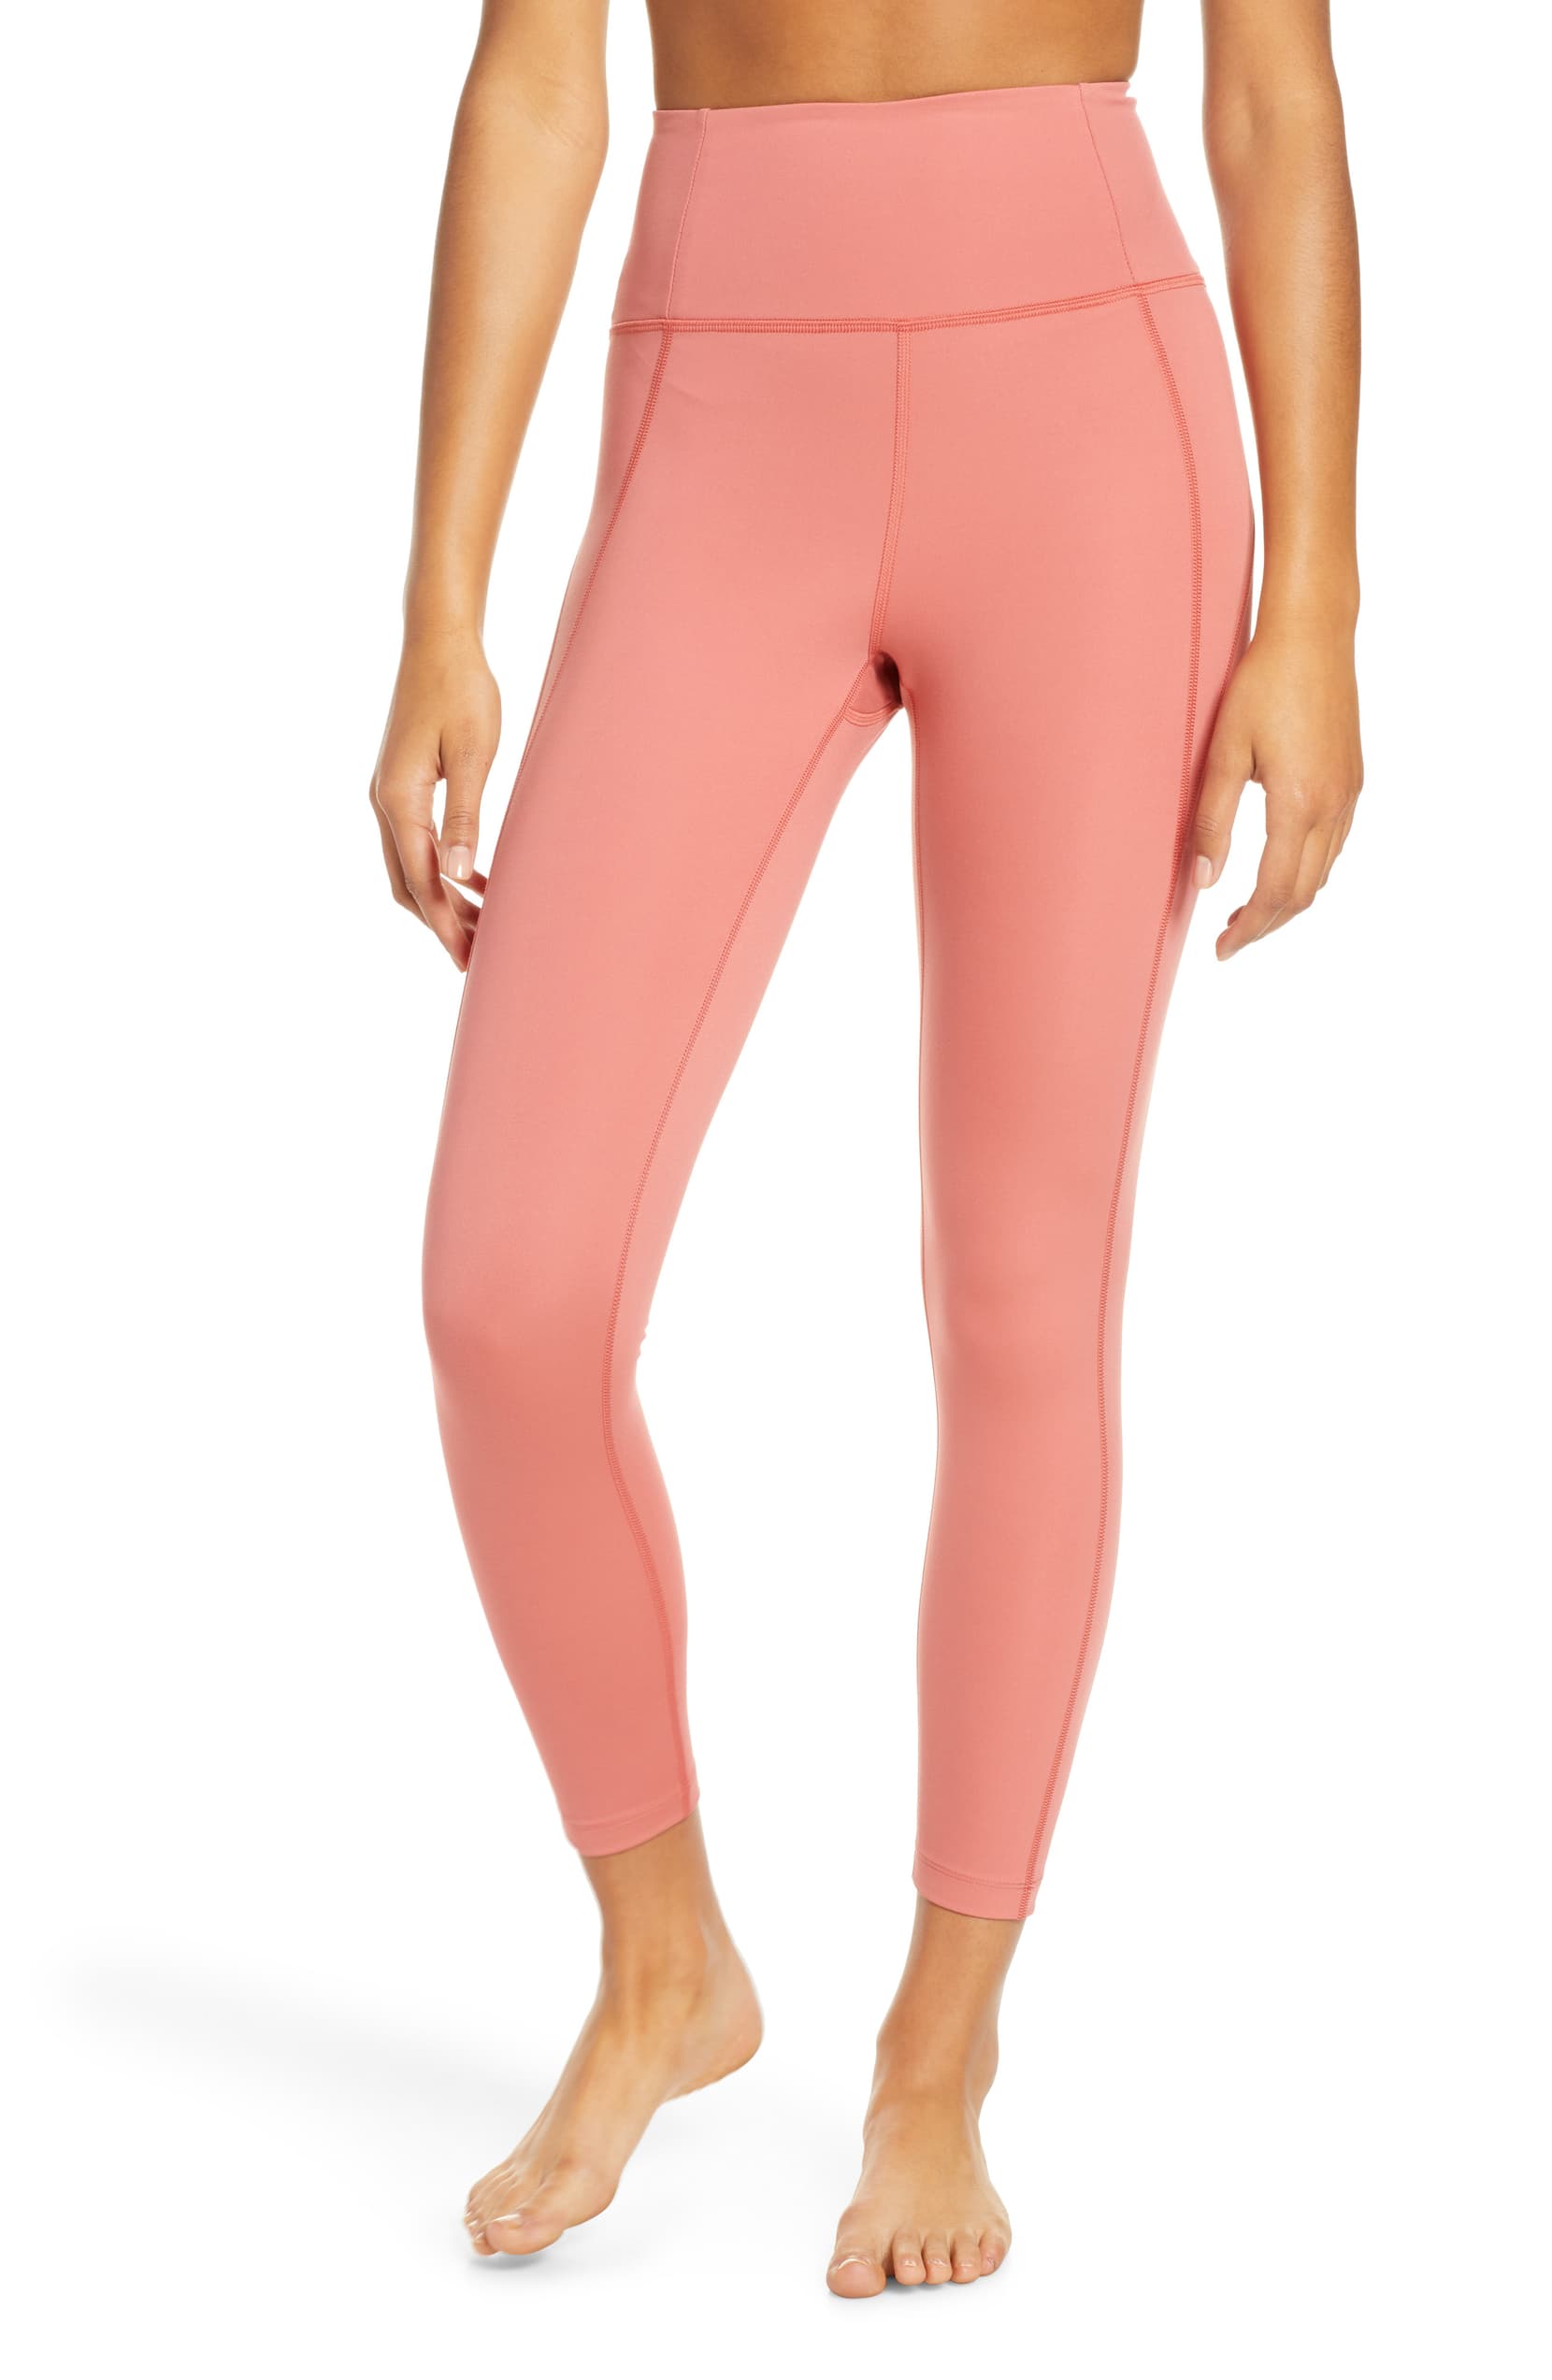 hot pink leggings workout